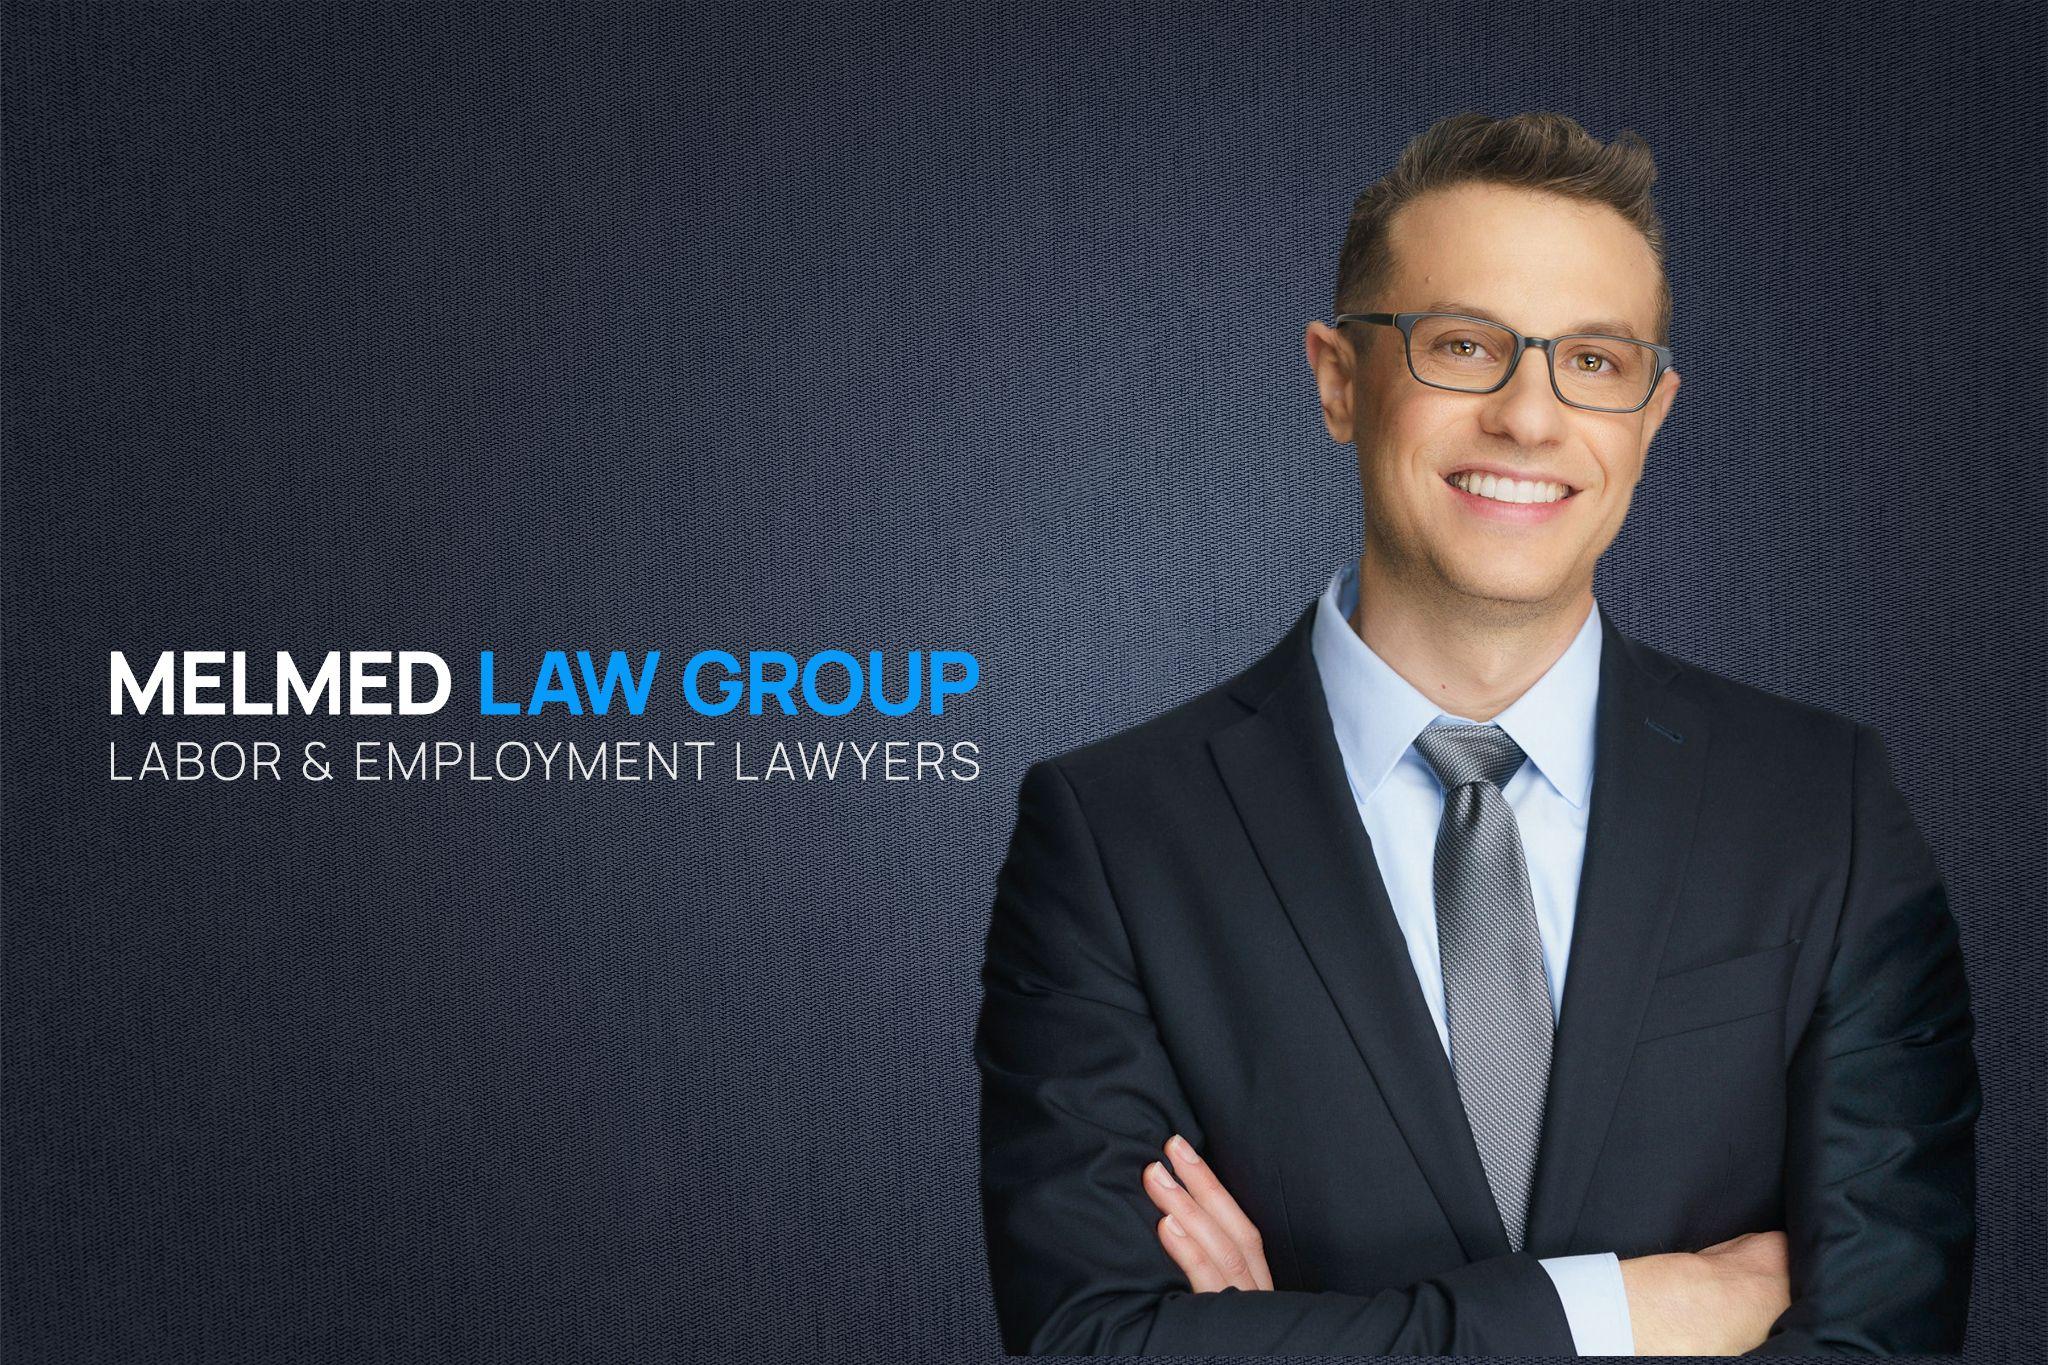 Meet Jonathan Melmed, Founder of Melmed Law Group